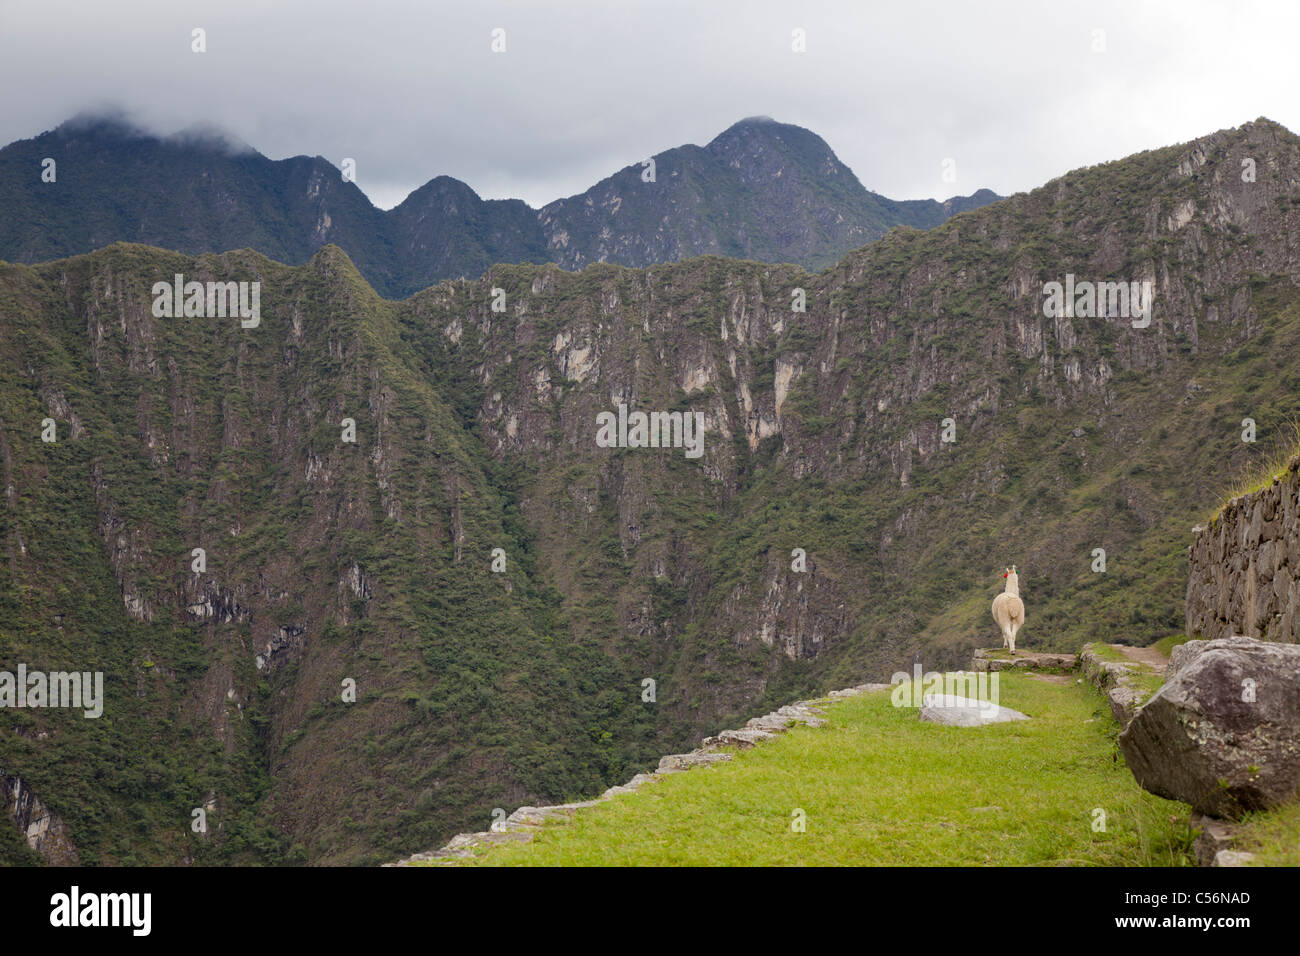 Un seul lama donne sur la vallée de Machu Picchu, Pérou Banque D'Images